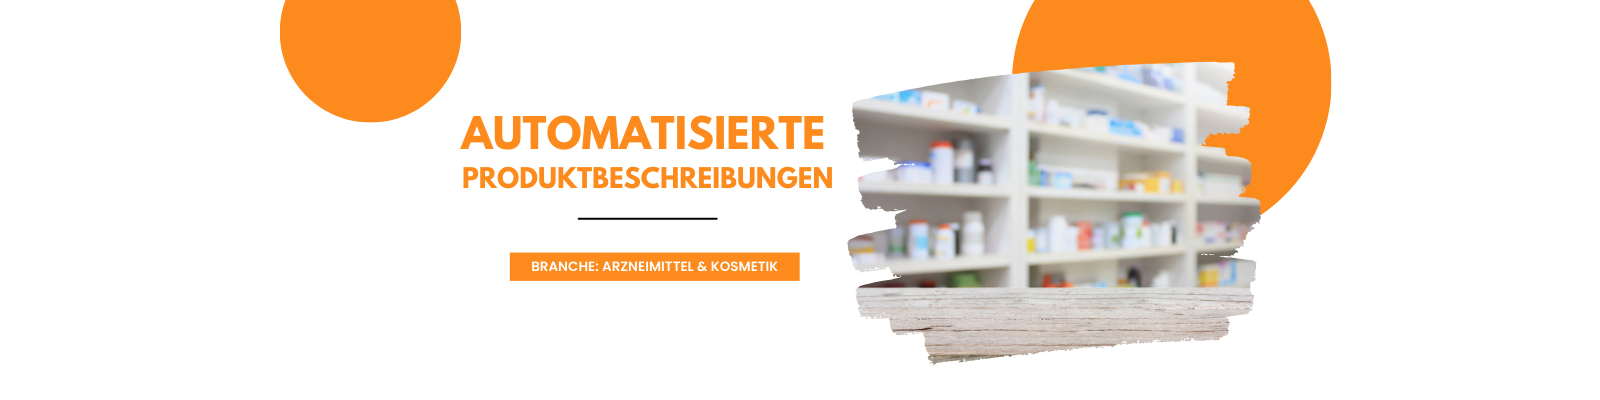 Automatisierte_Produktbeschreibungen_Arznei & Kosmetik